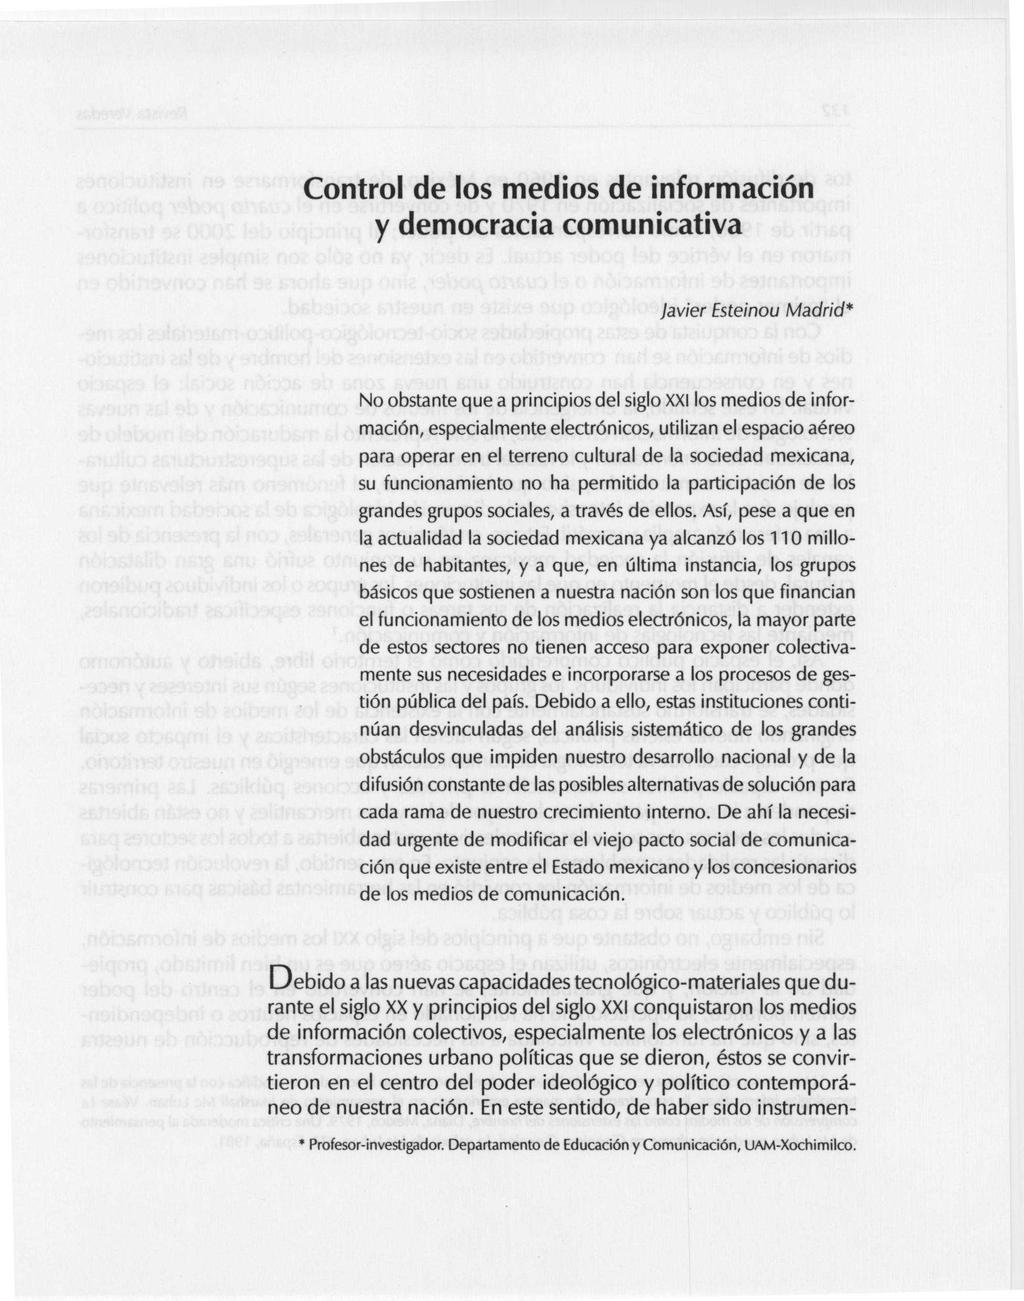 Control de los medios de información y democracia comunicativa Javier Esteinou Madrid* No obstante que a principios del siglo XXI los medios de información, especialmente electrónicos, utilizan el